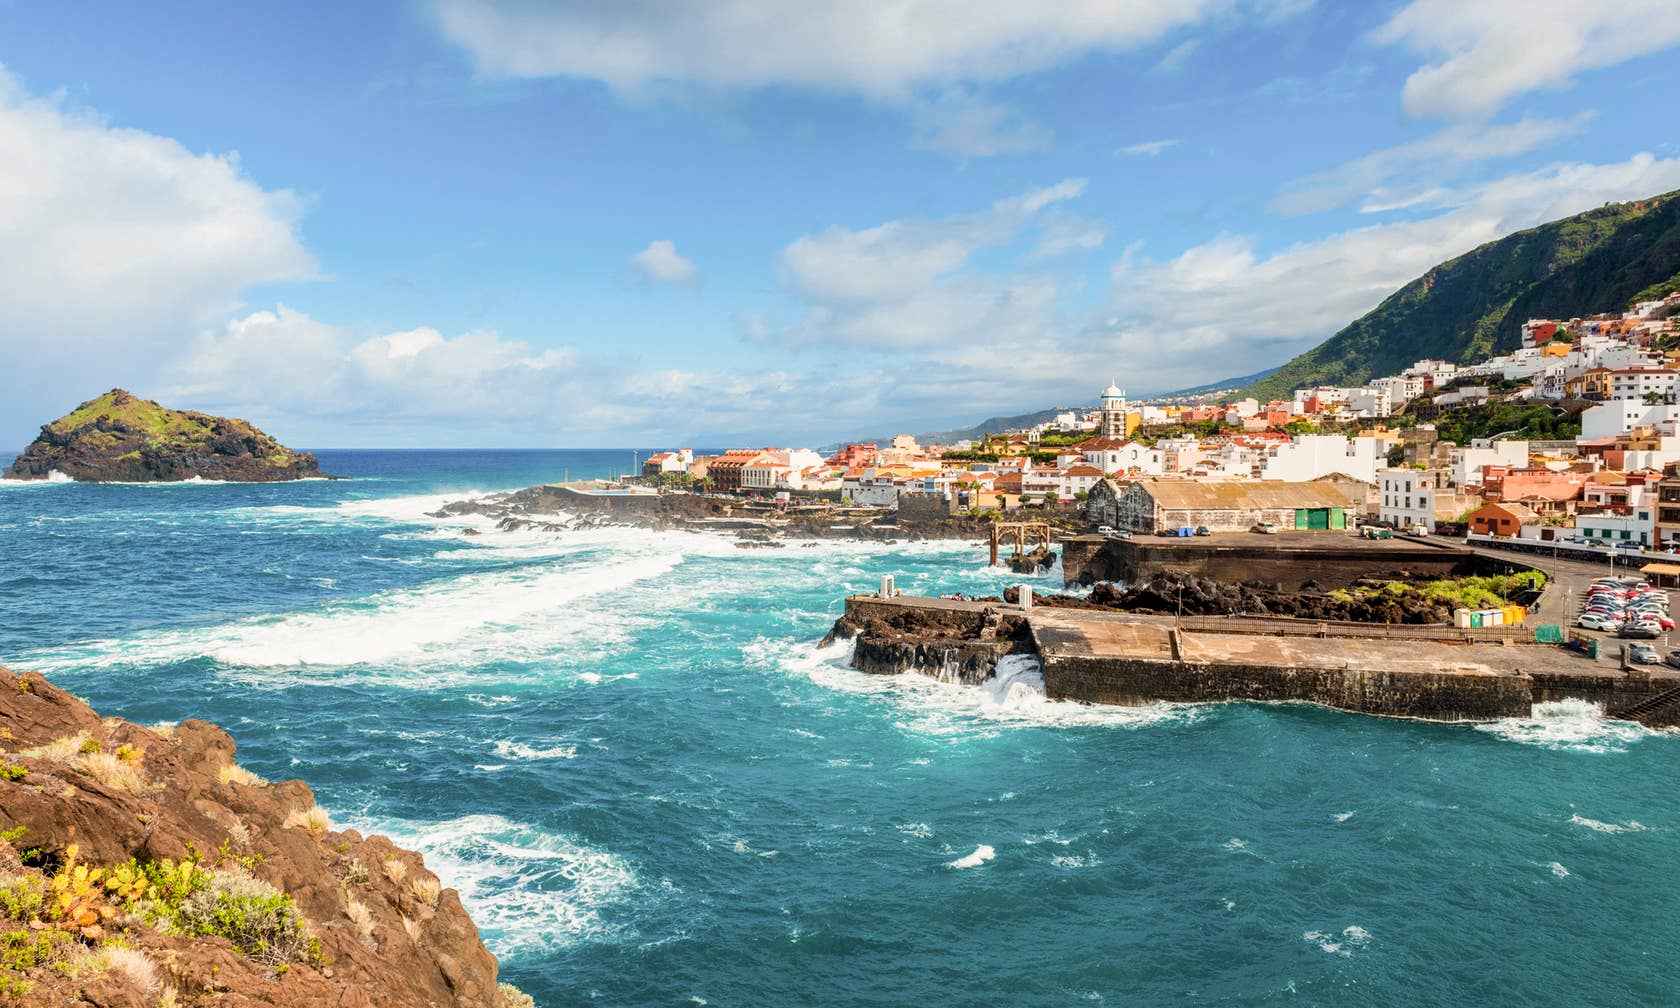 Bérbeadó nyaralók itt: Tenerife